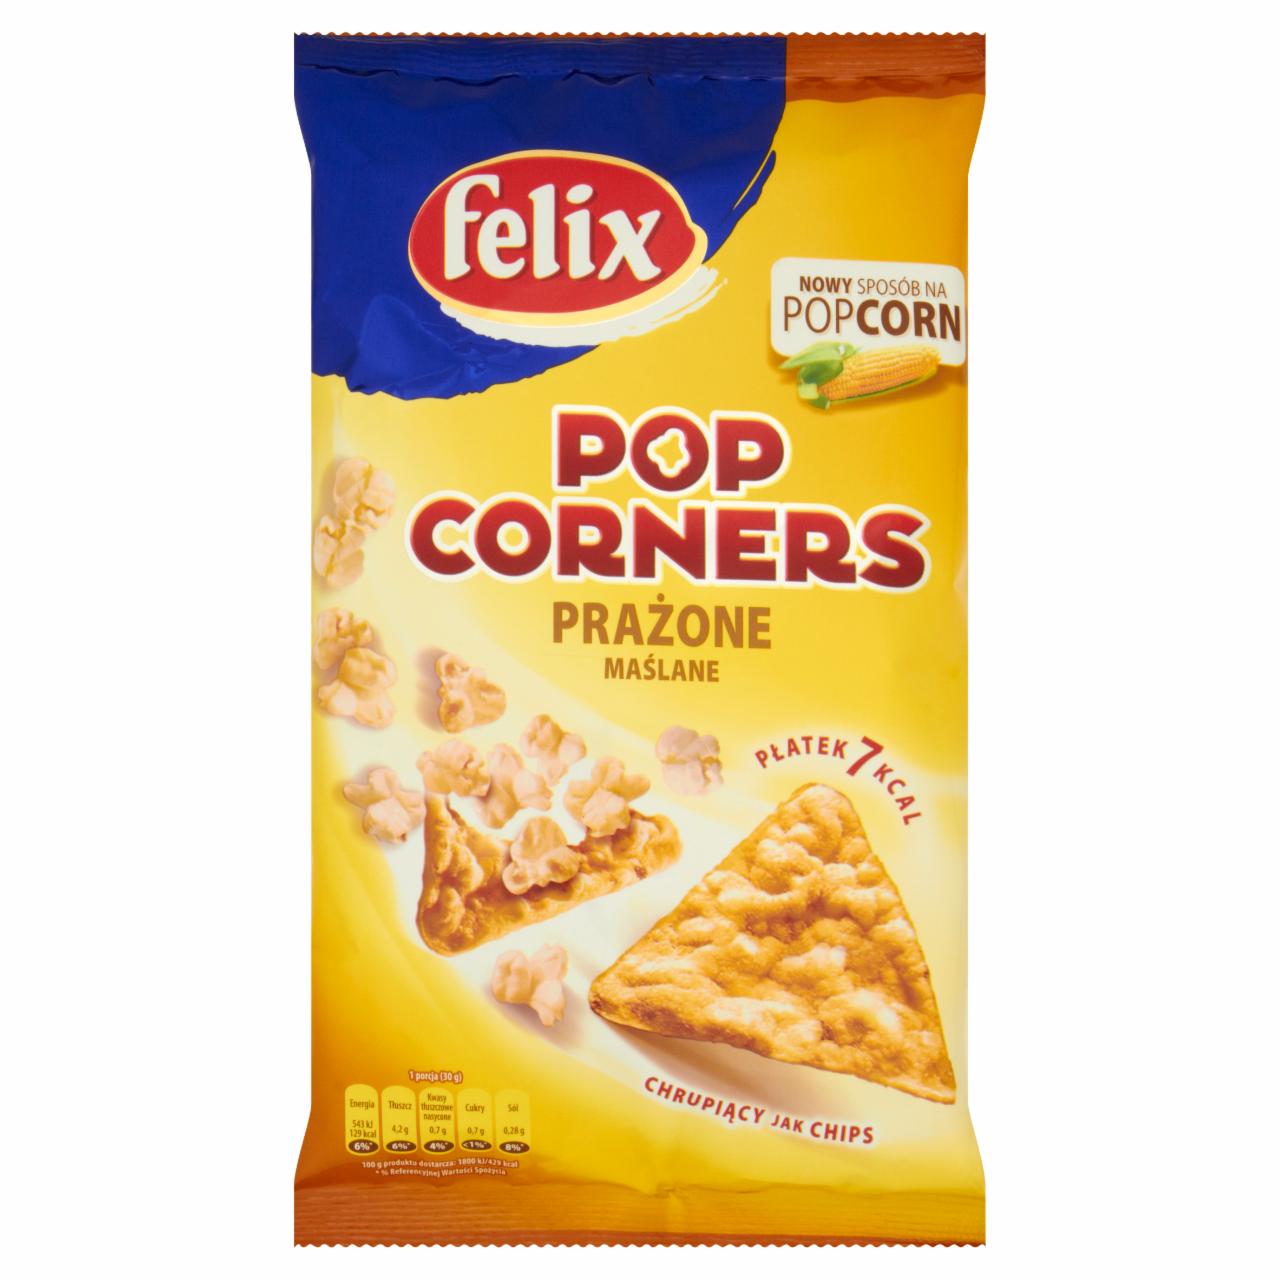 Zdjęcia - Felix Pop Corners Płatki prażone maślane 60 g